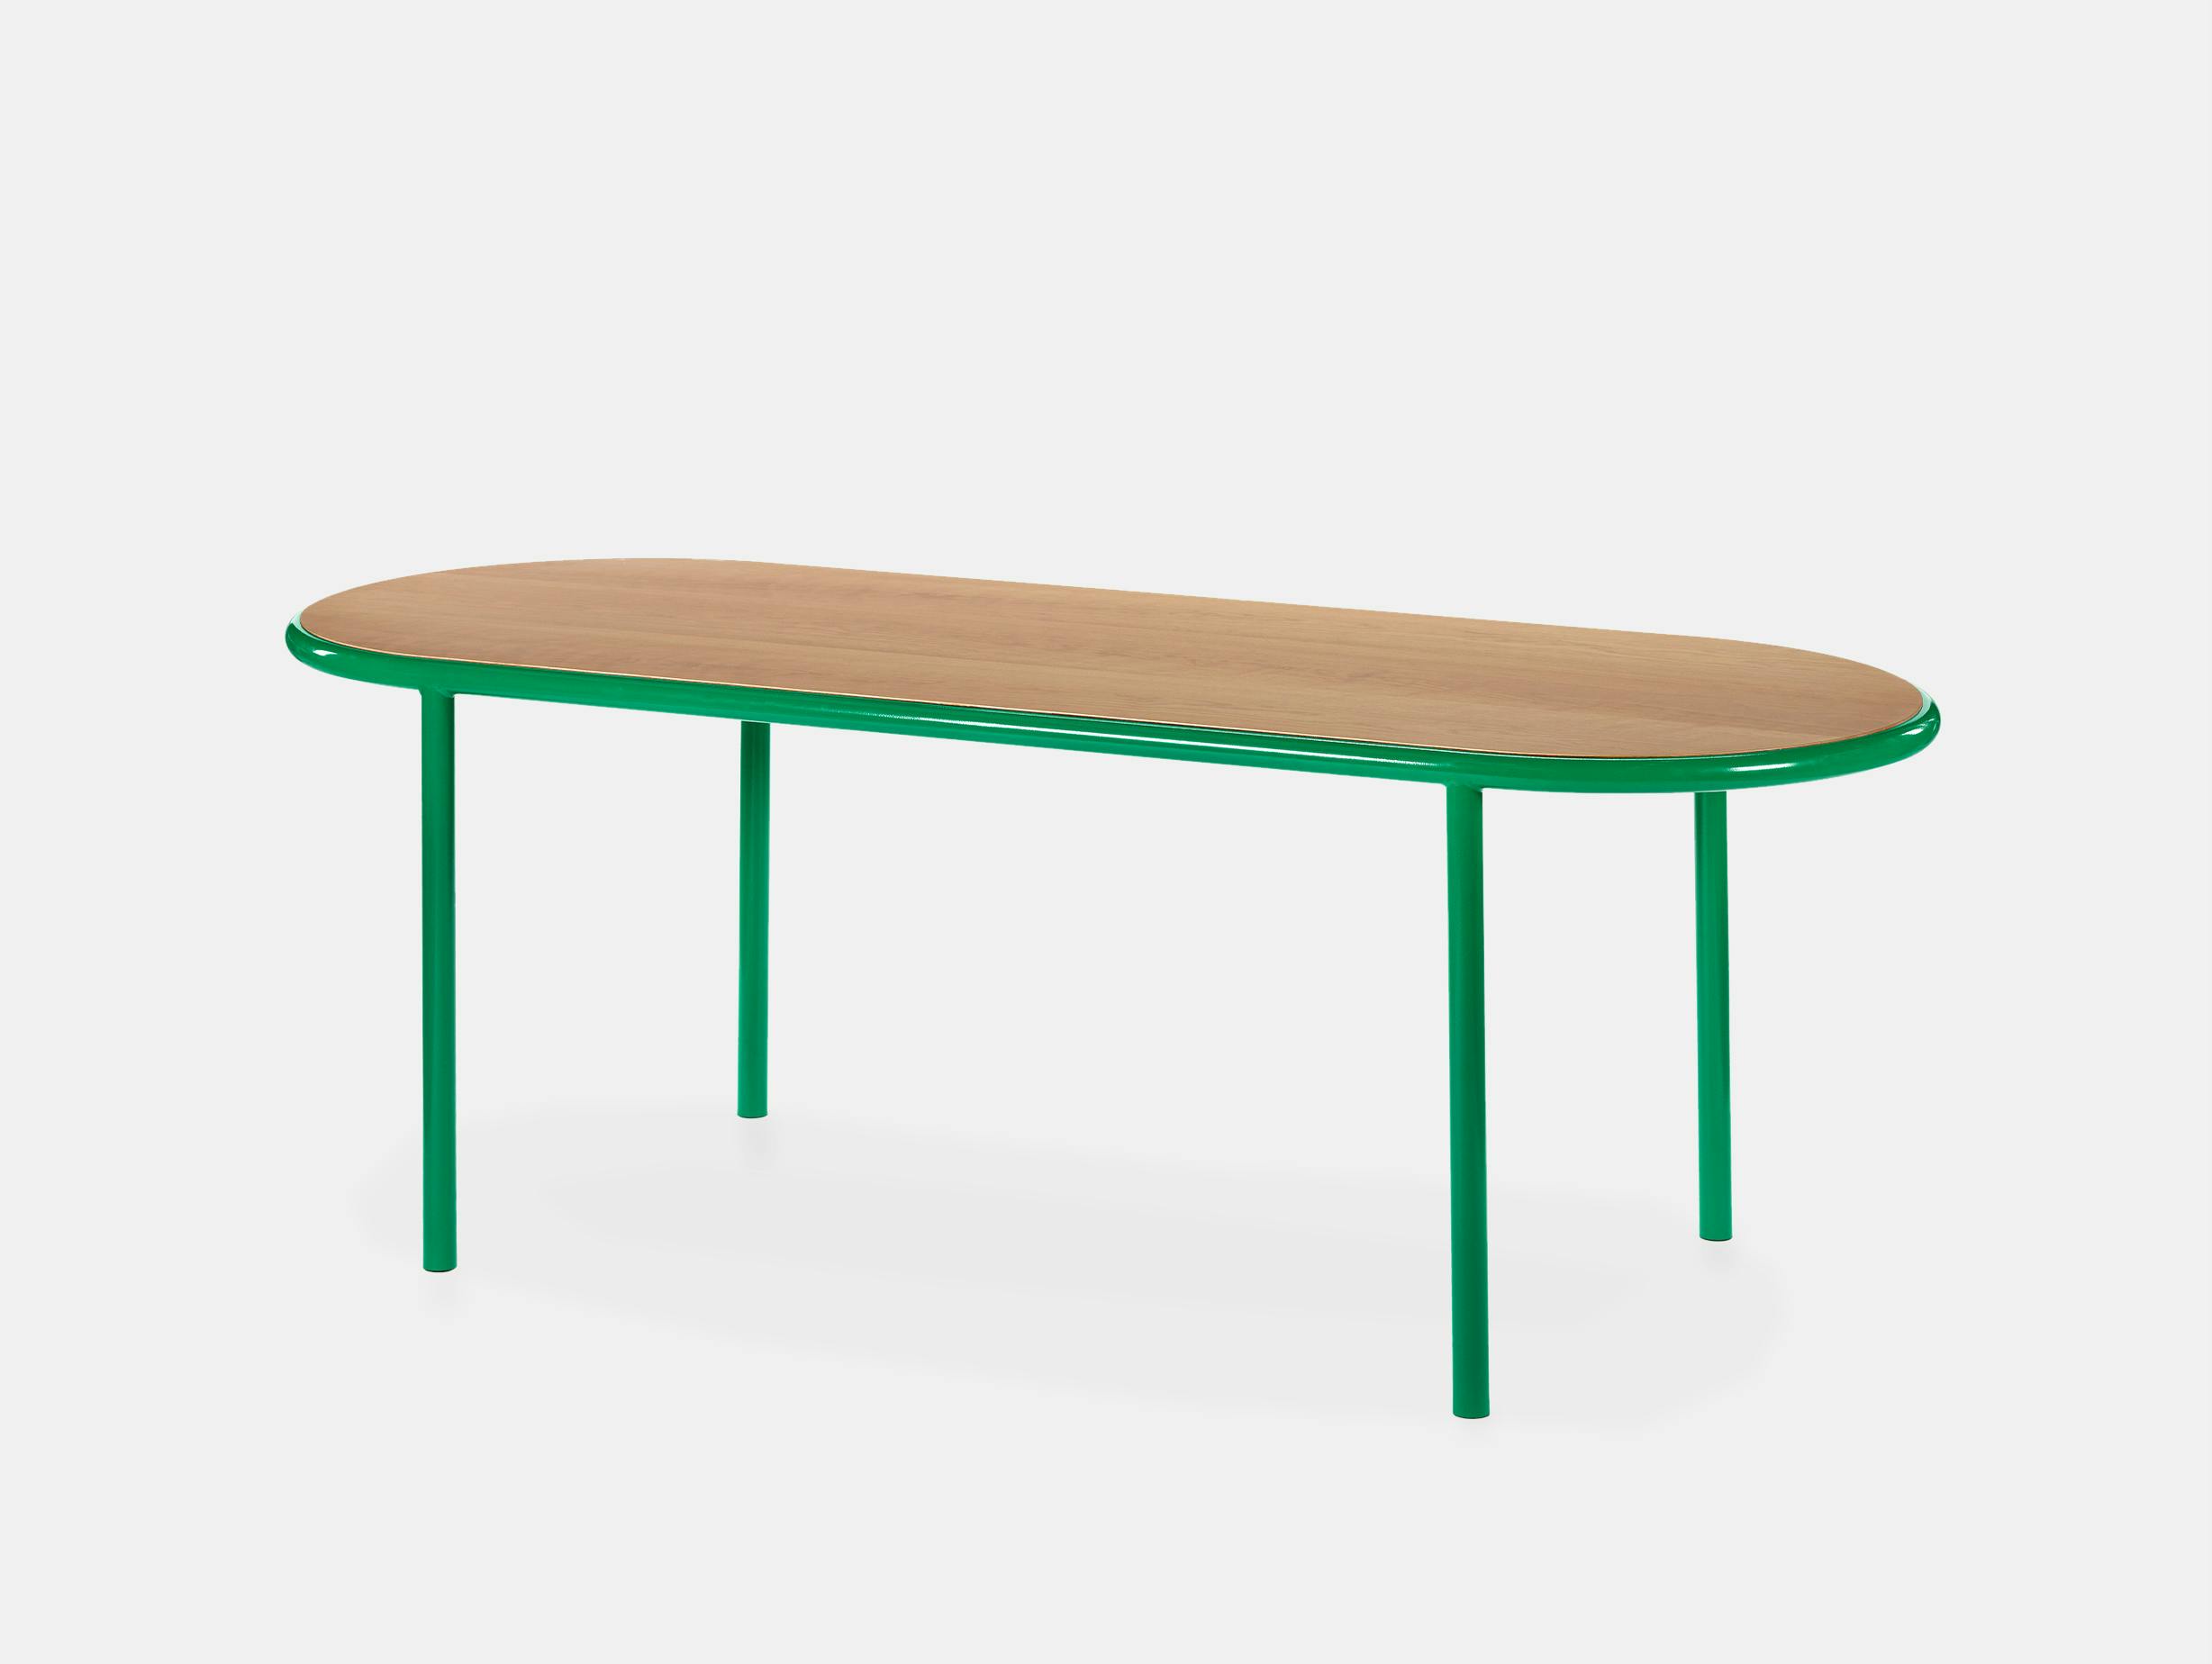 Muller van severen wooden table oval green cherry